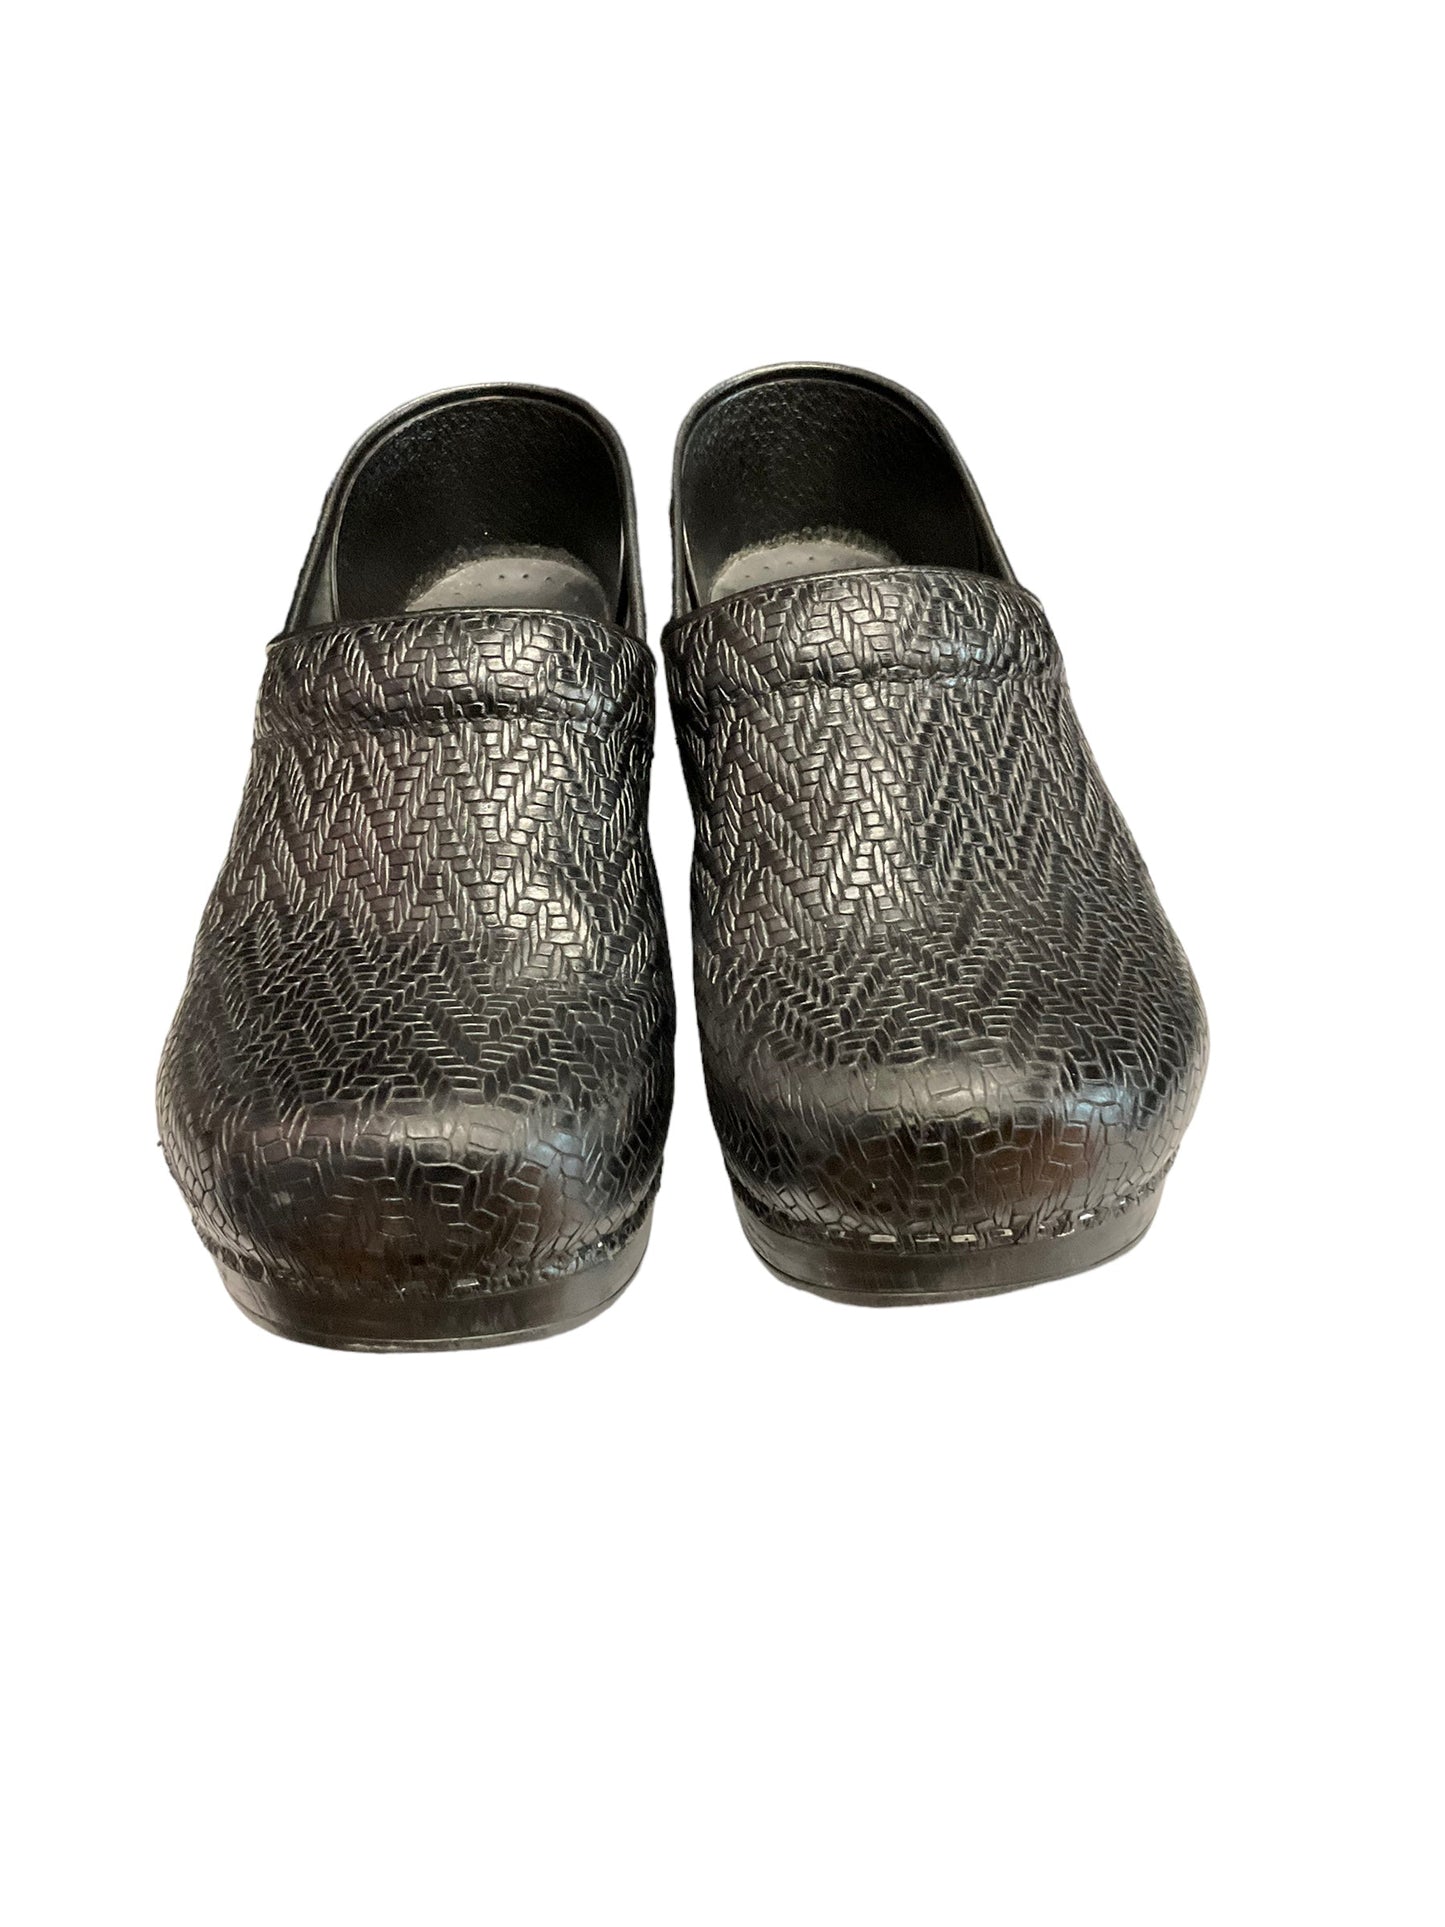 Shoes Heels Block By Dansko  Size: 10